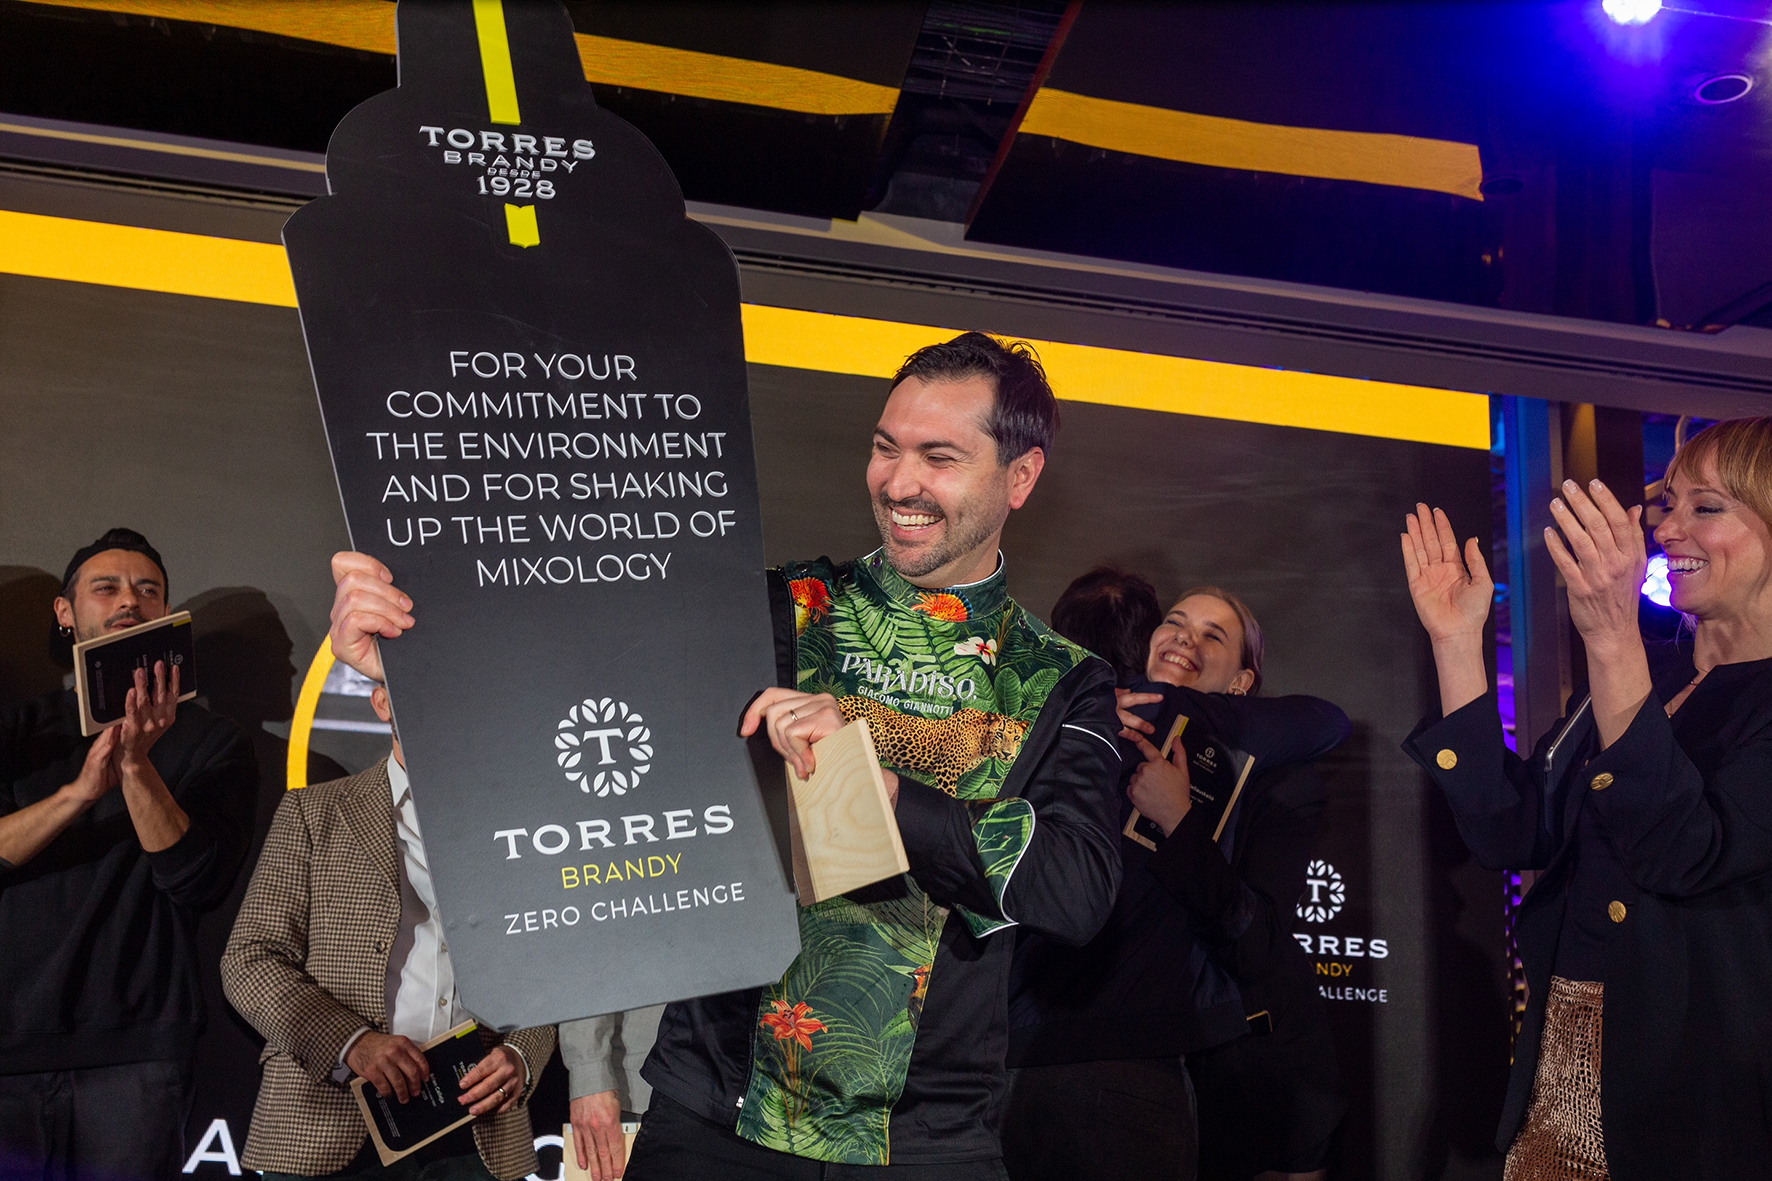 España, representada por Giacomo Giannotti de Paradiso, gana el Torres Brandy Zero Challenge